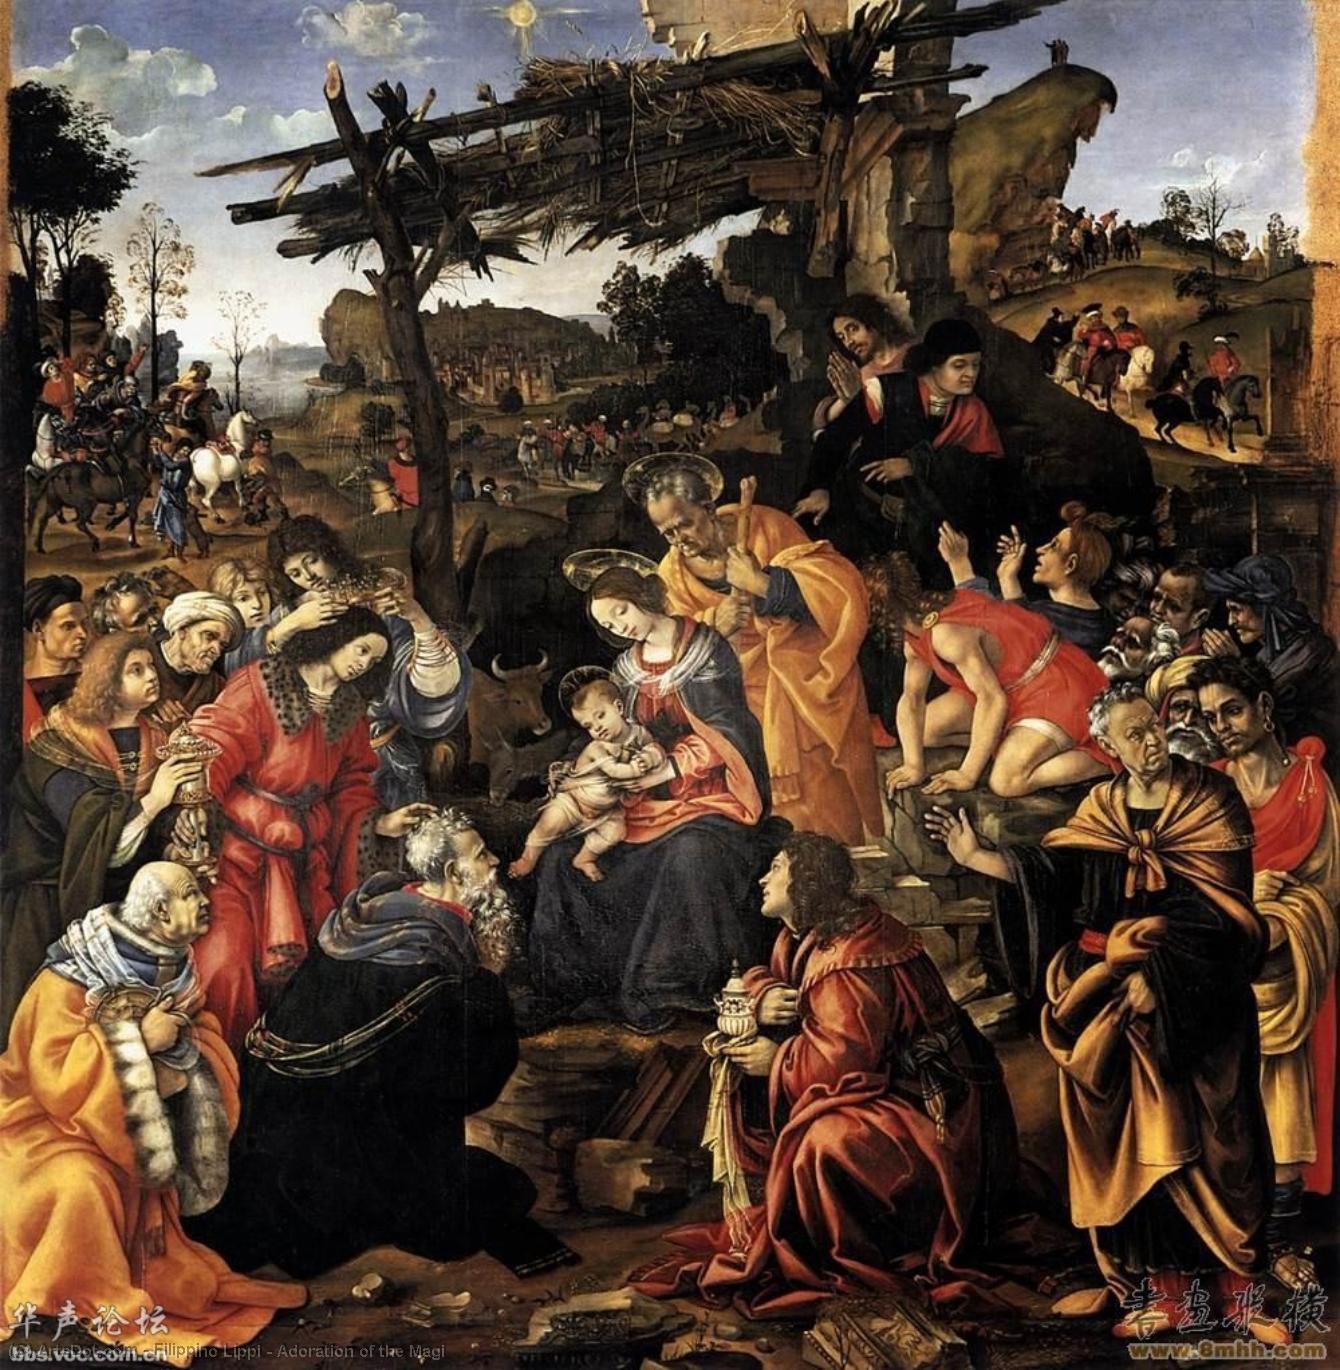 WikiOO.org - Enciclopédia das Belas Artes - Pintura, Arte por Filippino Lippi - Adoration of the Magi